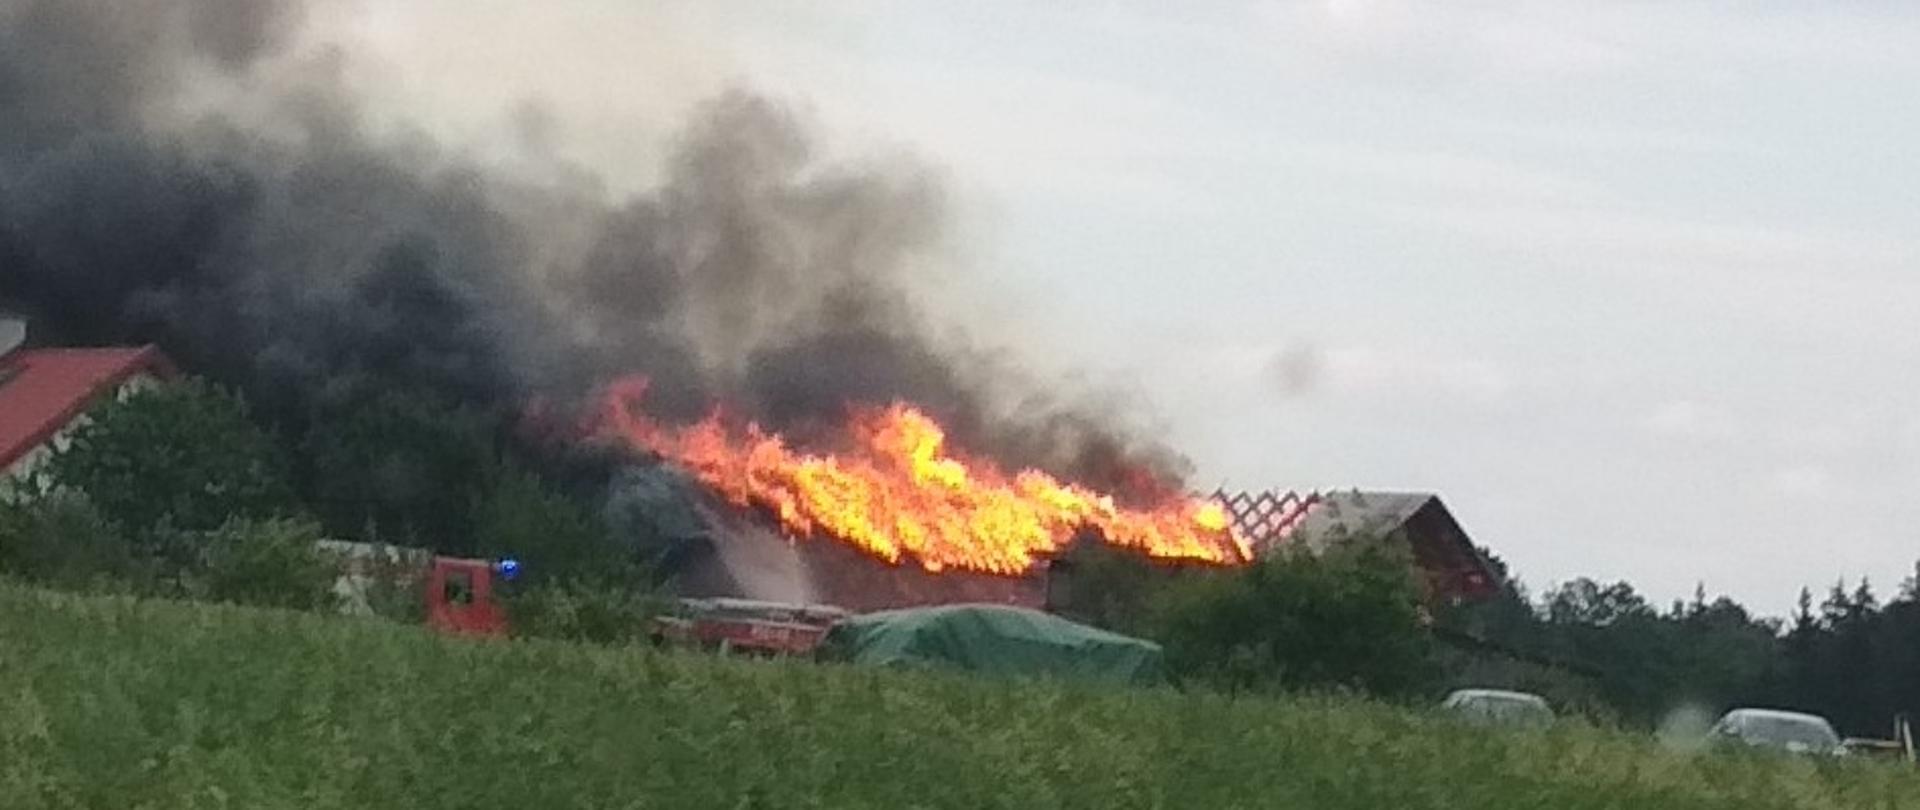 Zdjęcie przedstawia pożar obiektów gospodarczych oraz inwentarskiego widziany z pojazdu pożarniczego w momencie dojazdu do miejsca zdarzenia